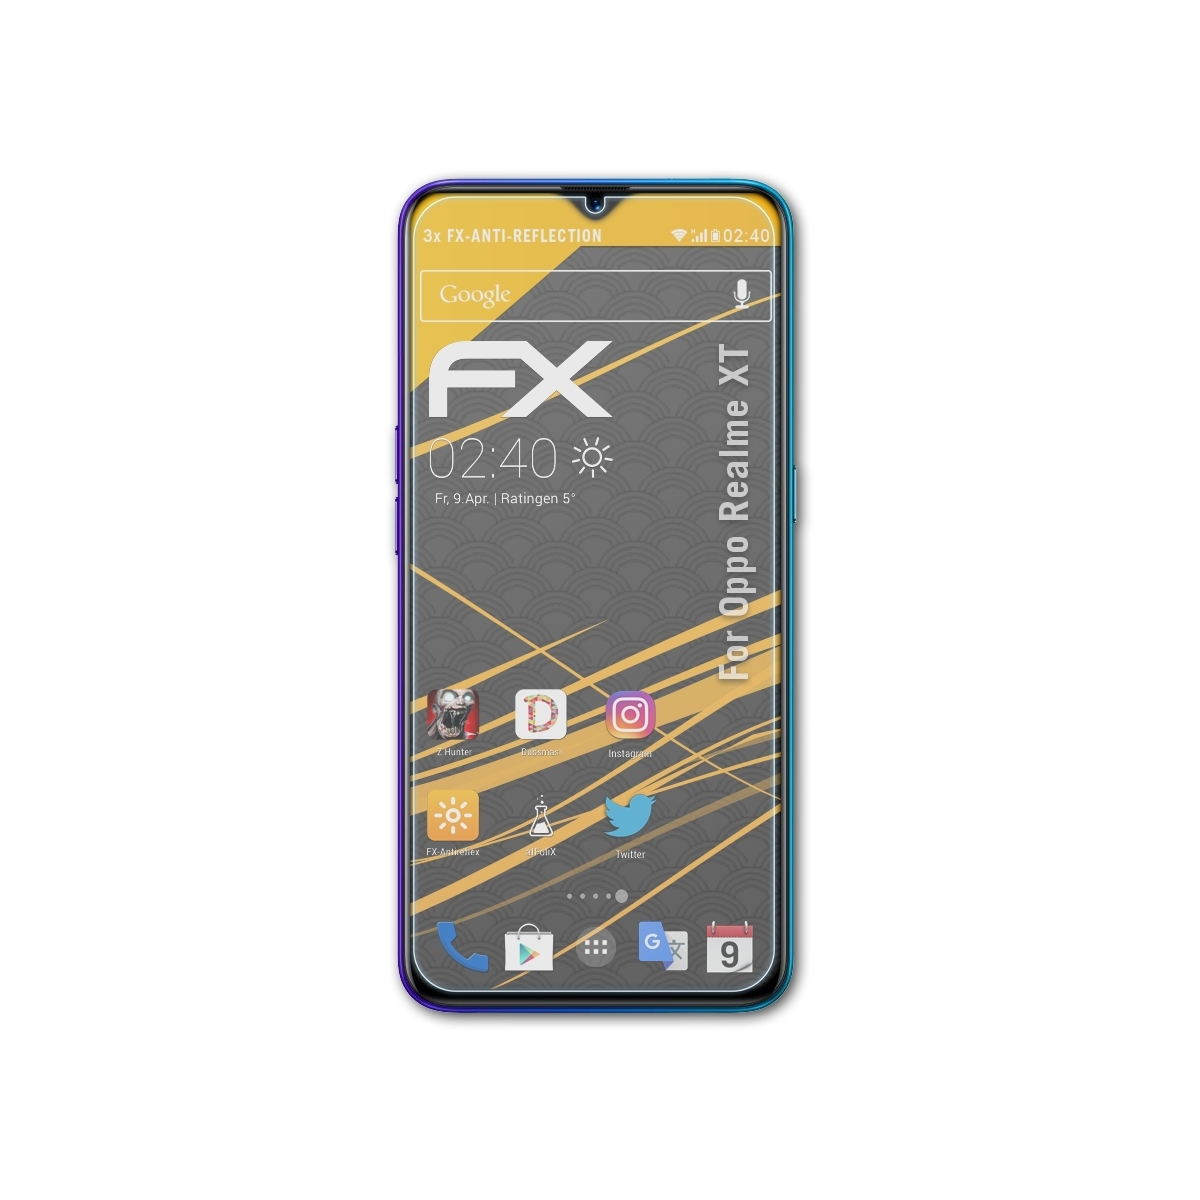 FX-Antireflex Realme ATFOLIX XT) Oppo 3x Displayschutz(für